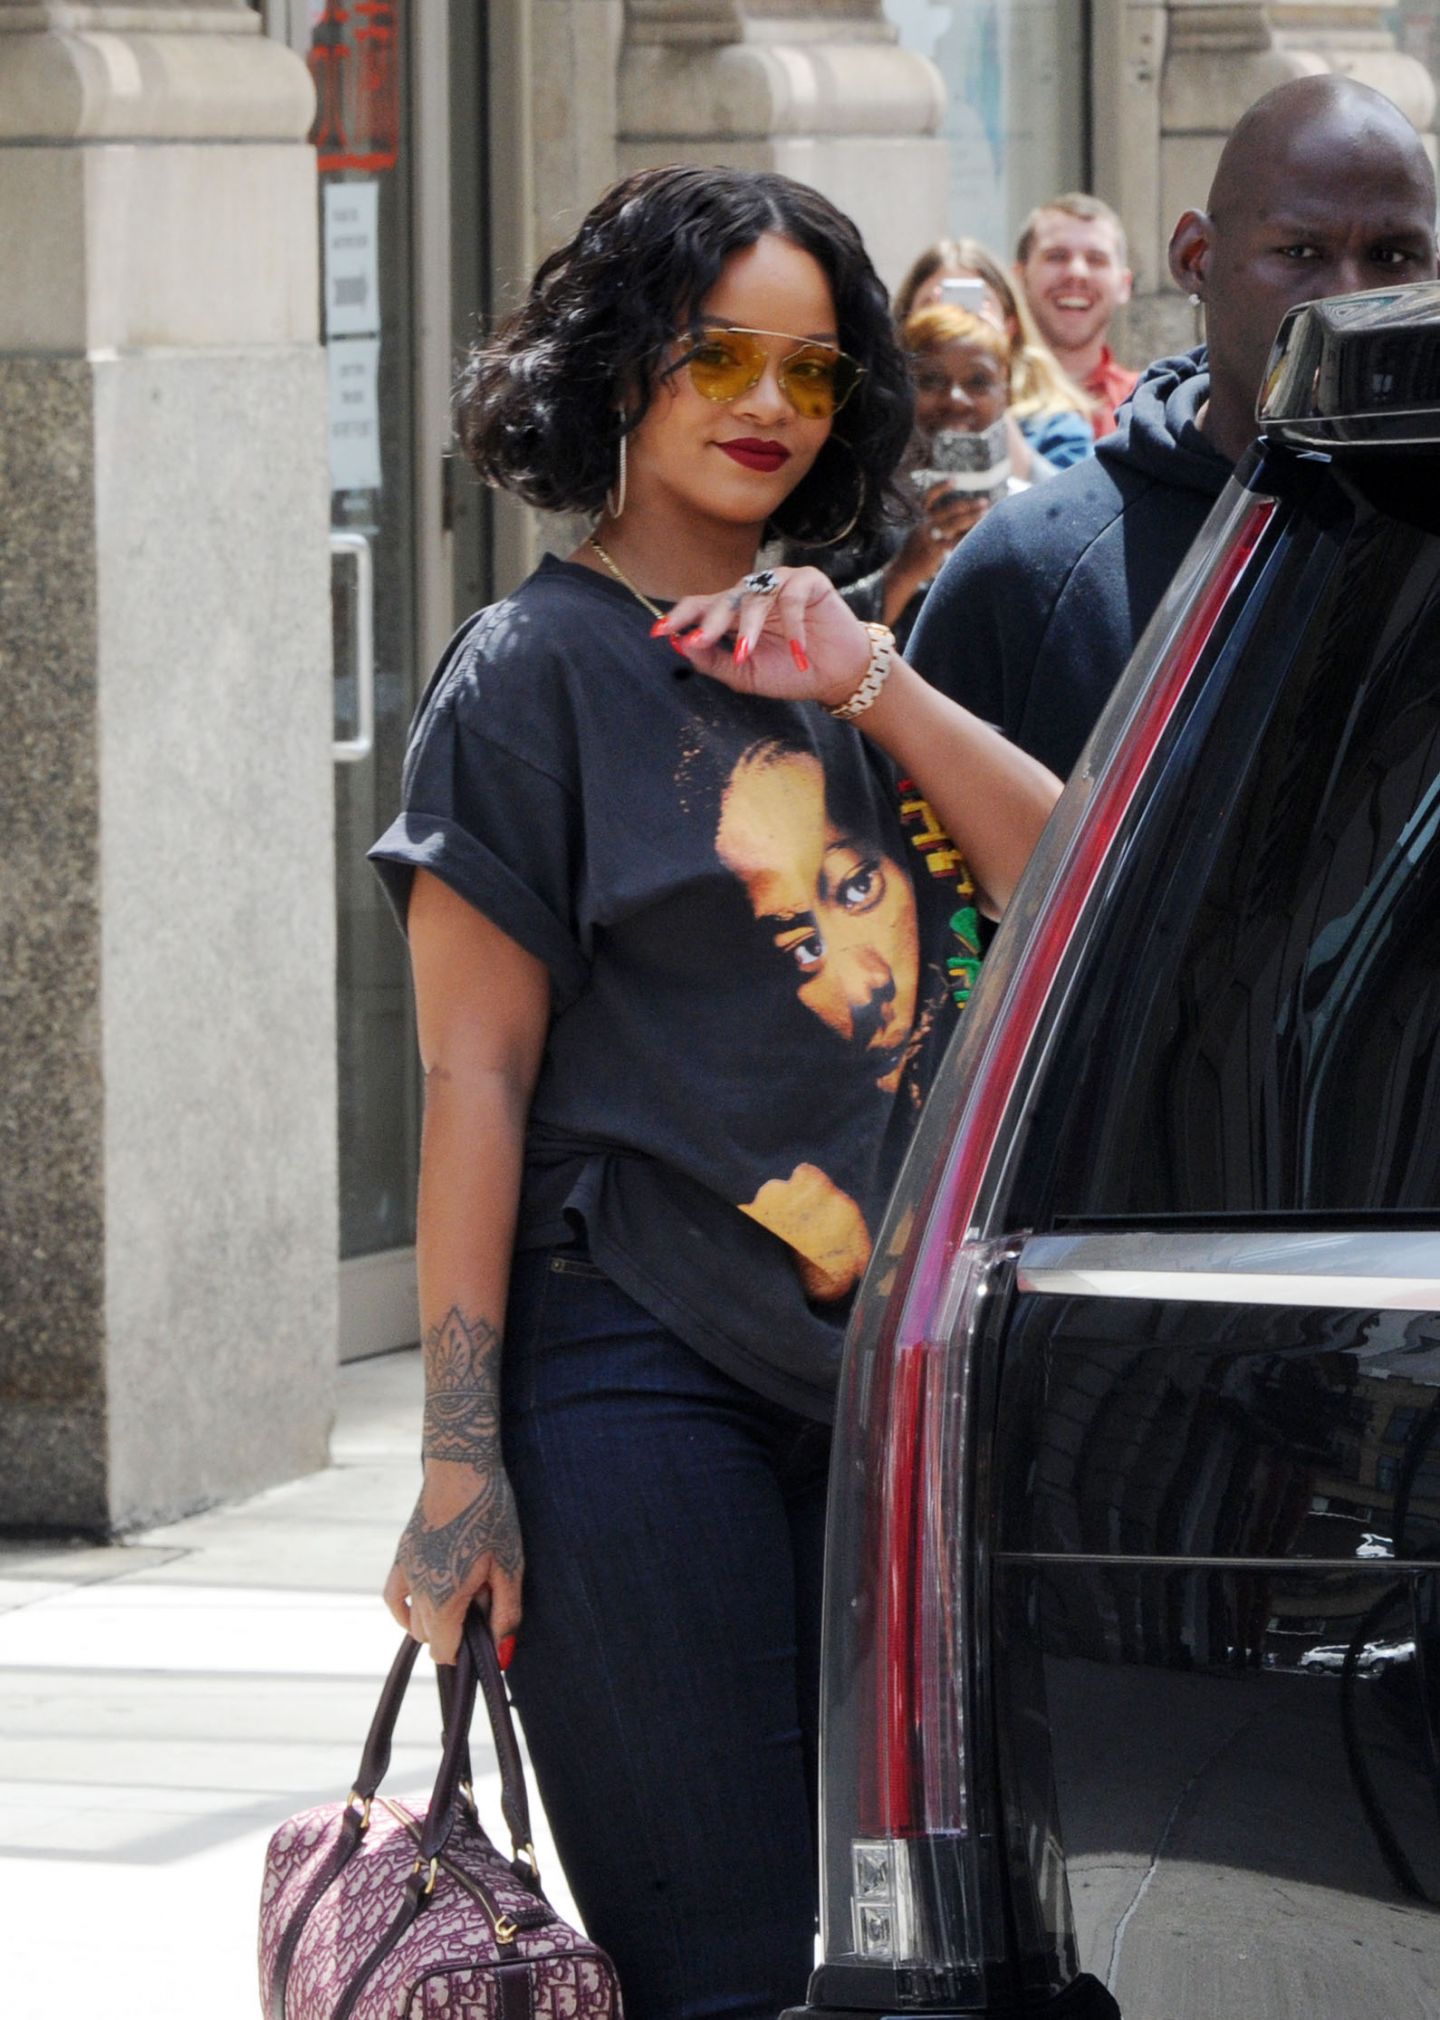 Rihanna cu acest plan strict de dietă, cântăreața pierde în greutate - FOCUS Online